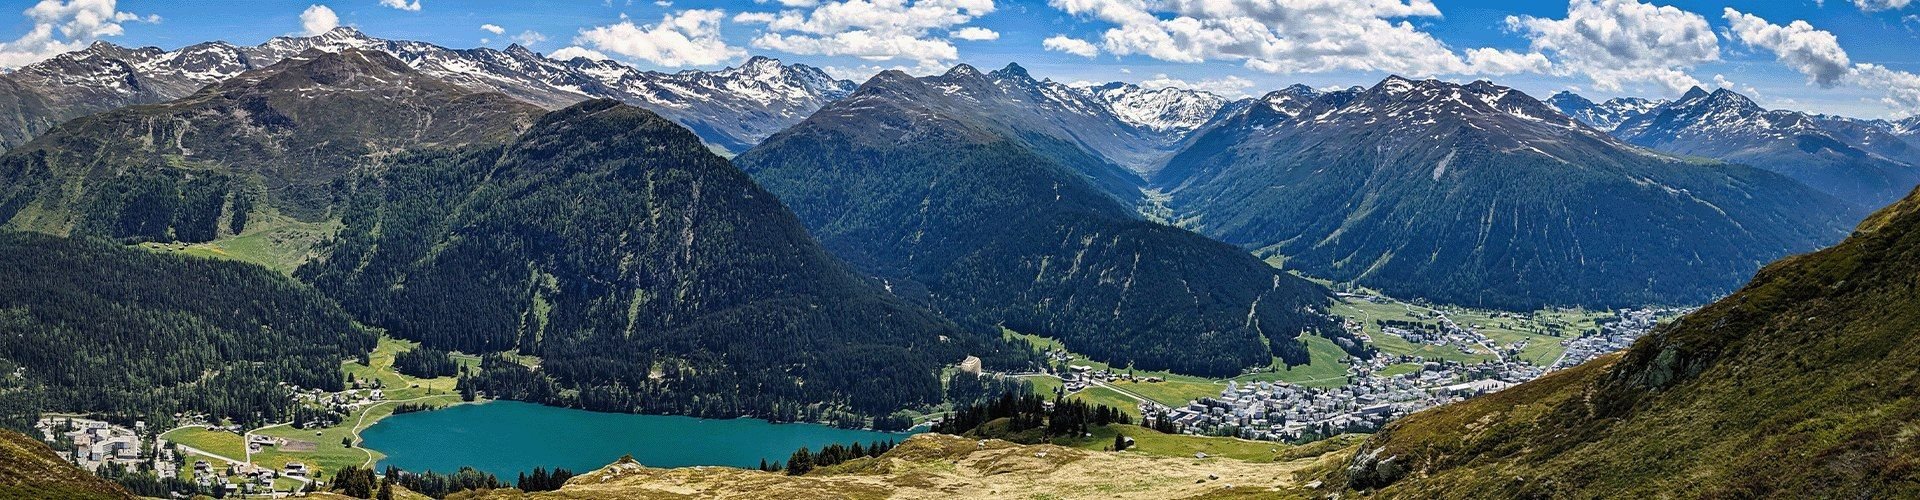 Familienurlaub in Graubünden